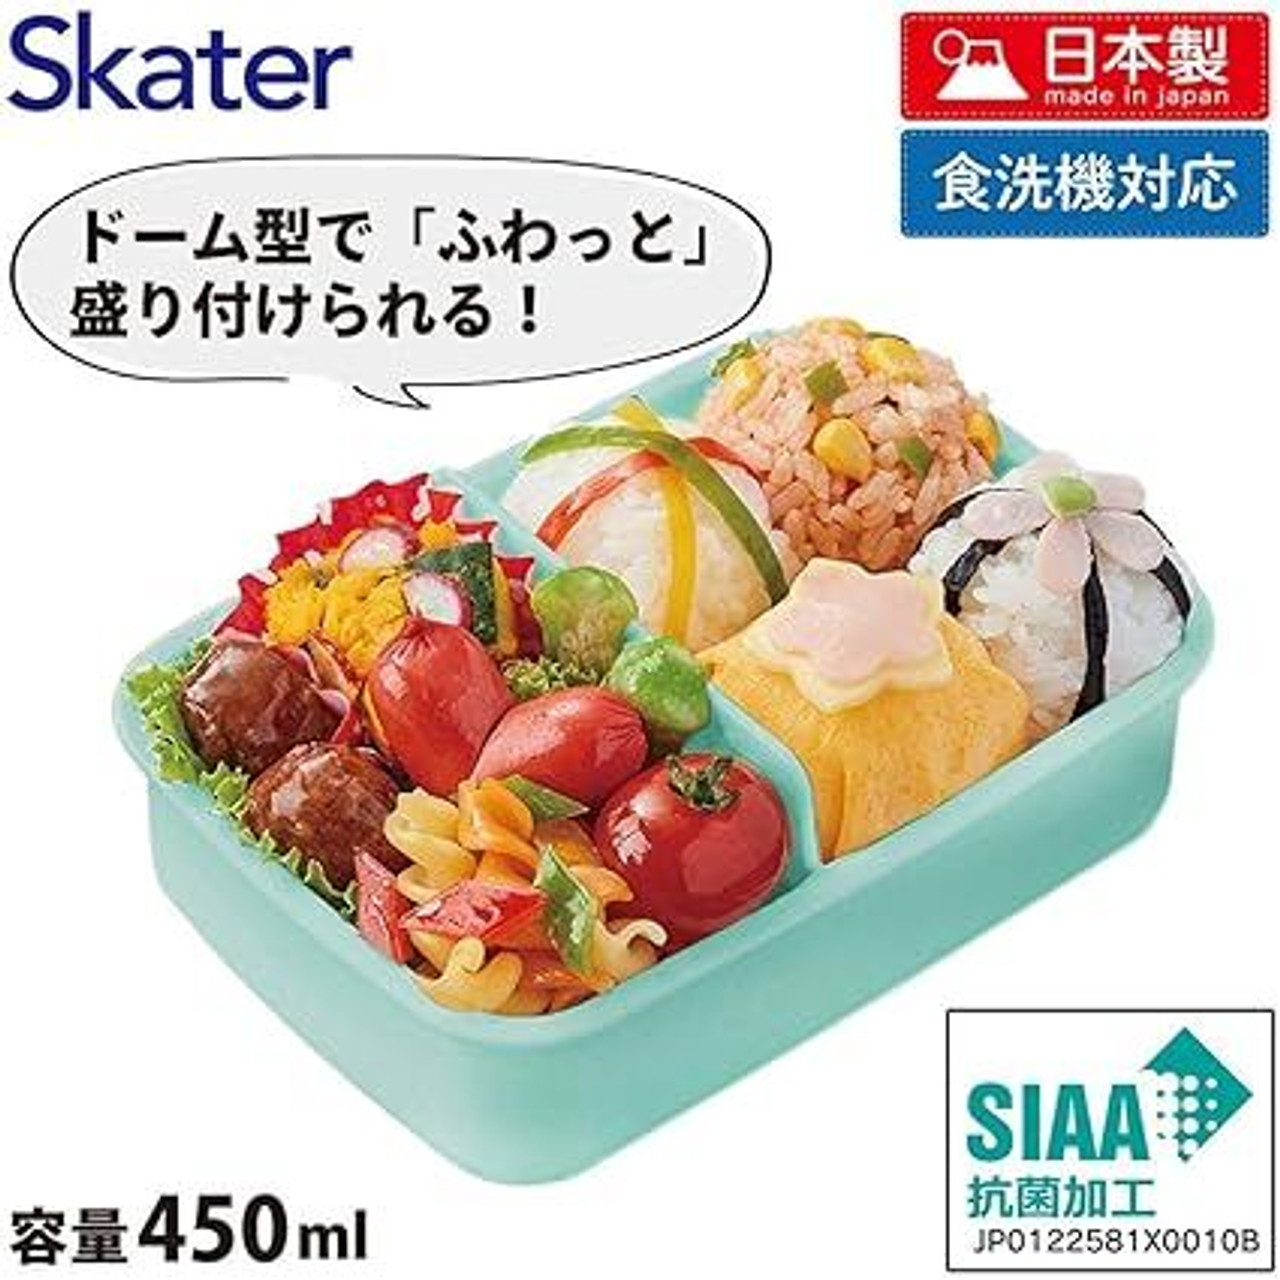 Skater Pokedays Easy Light Lunch Box Medium Size 550ml